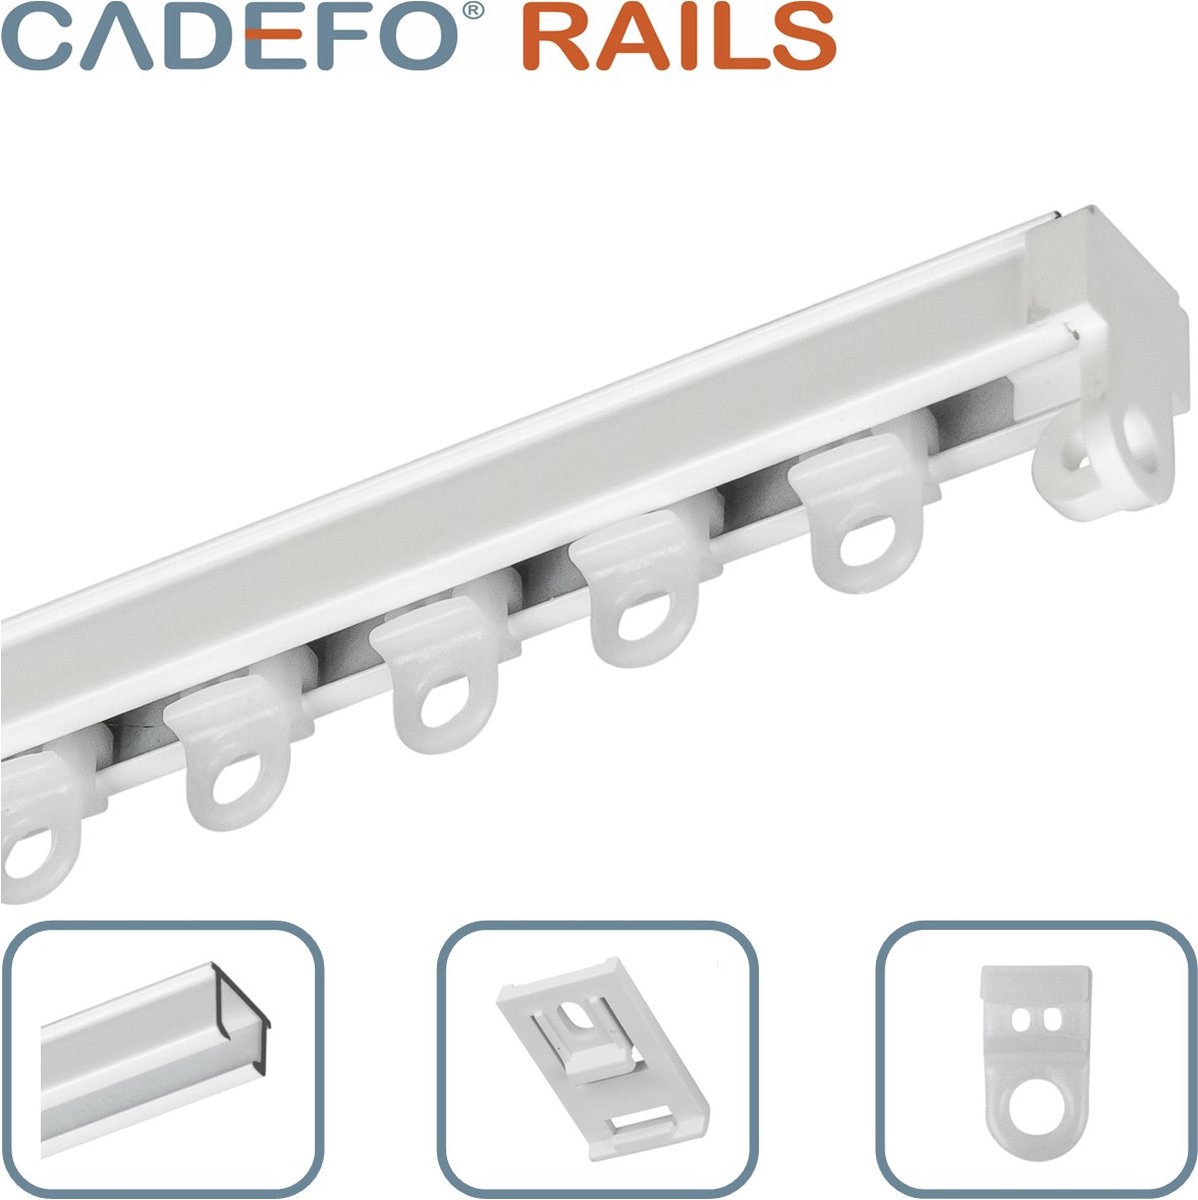 CADEFO RAILS (301 - 350 cm) Gordijnrails - Compleet op maat! - UIT 1 STUK - Leverbaar tot 6 meter - Plafondbevestiging - Lengte 309 cm